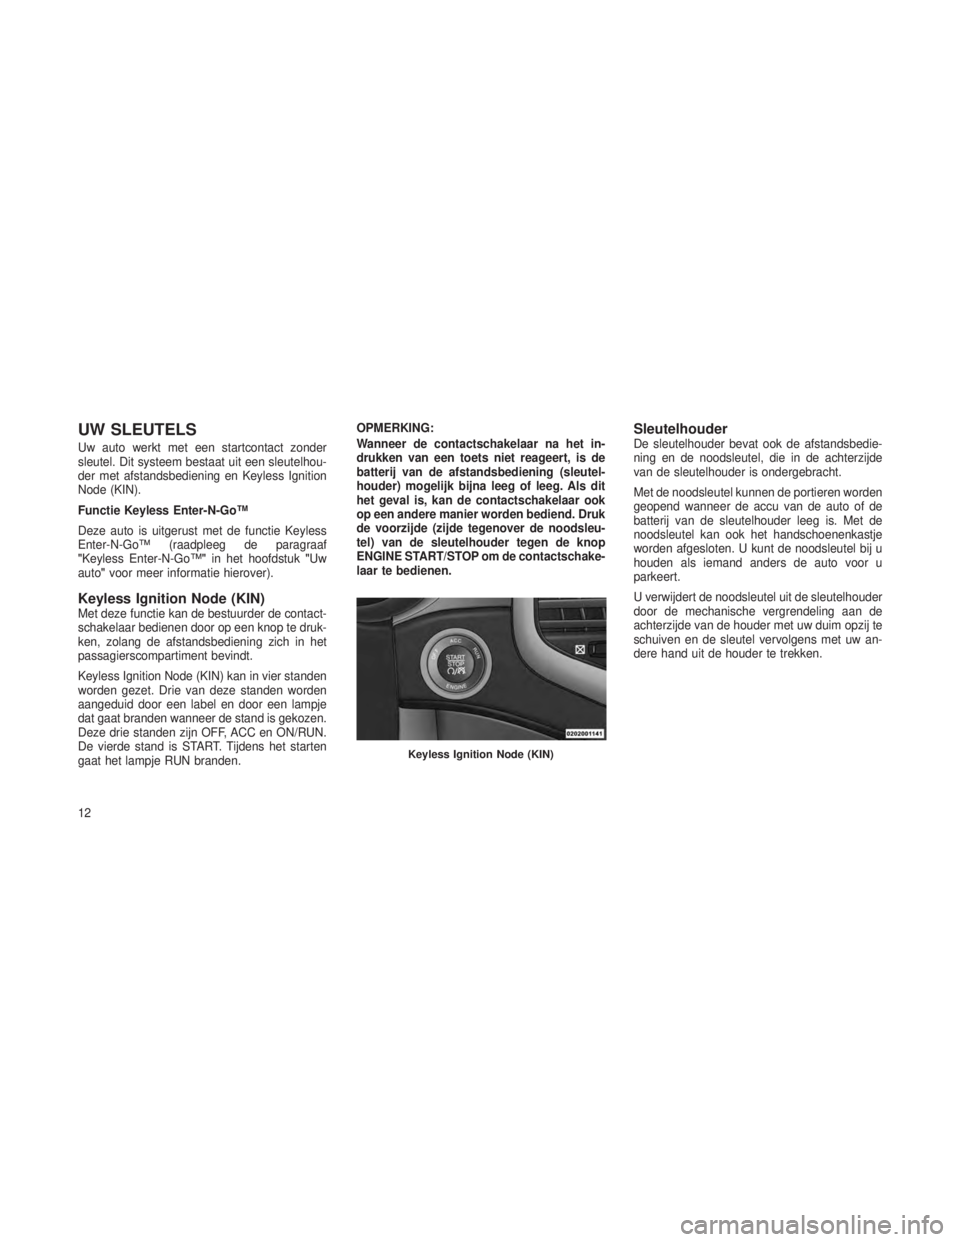 JEEP GRAND CHEROKEE 2013  Instructieboek (in Dutch) UW SLEUTELS
Uw auto werkt met een startcontact zonder
sleutel. Dit systeem bestaat uit een sleutelhou-
der met afstandsbediening en Keyless Ignition
Node (KIN).
Functie Keyless Enter-N-Go™
Deze auto